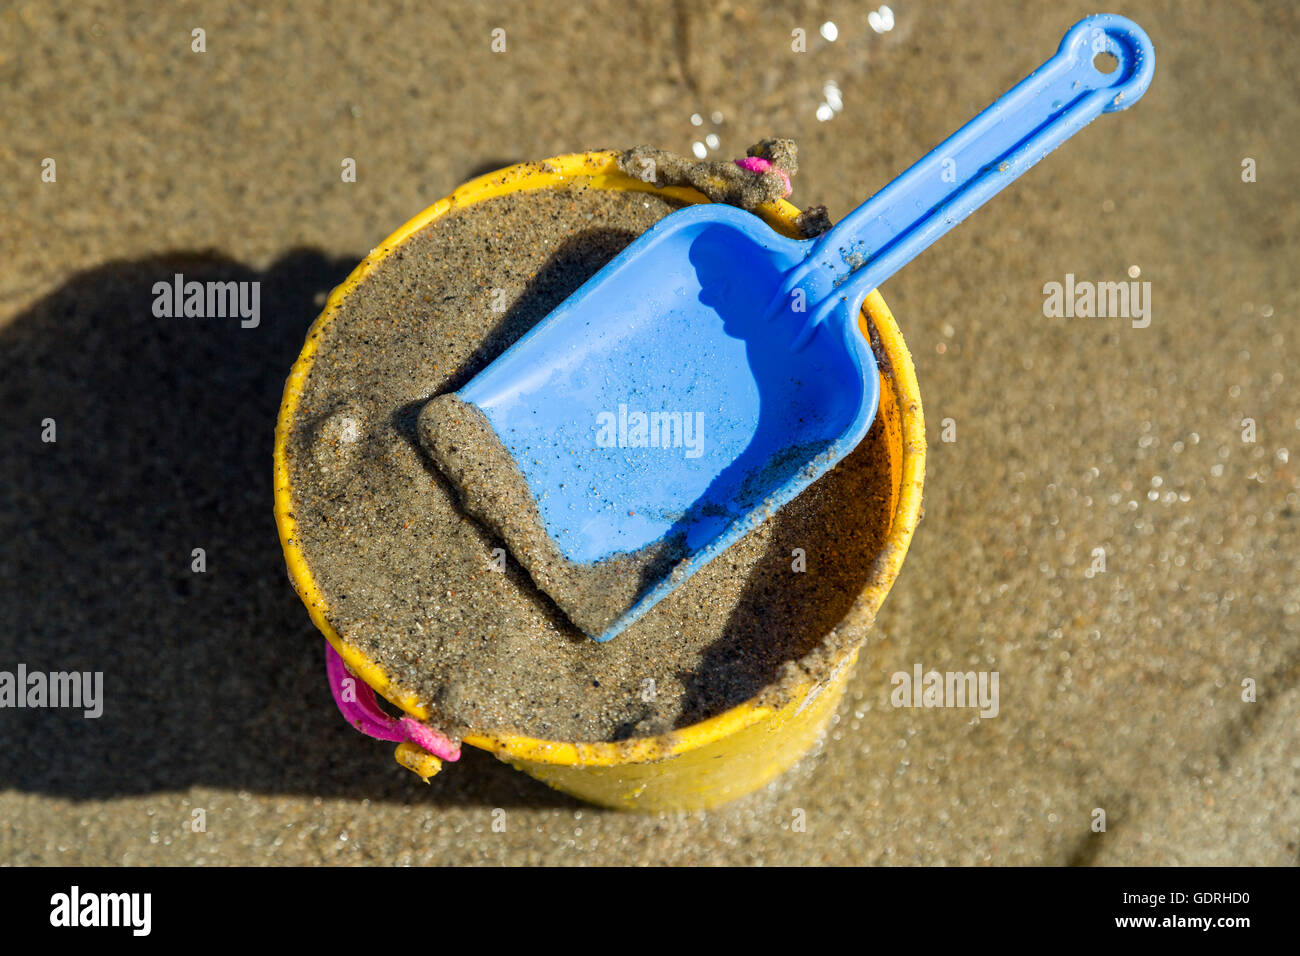 Spielzeug Schaufel und Eimer an einem Strand mit Sand. Stockfoto